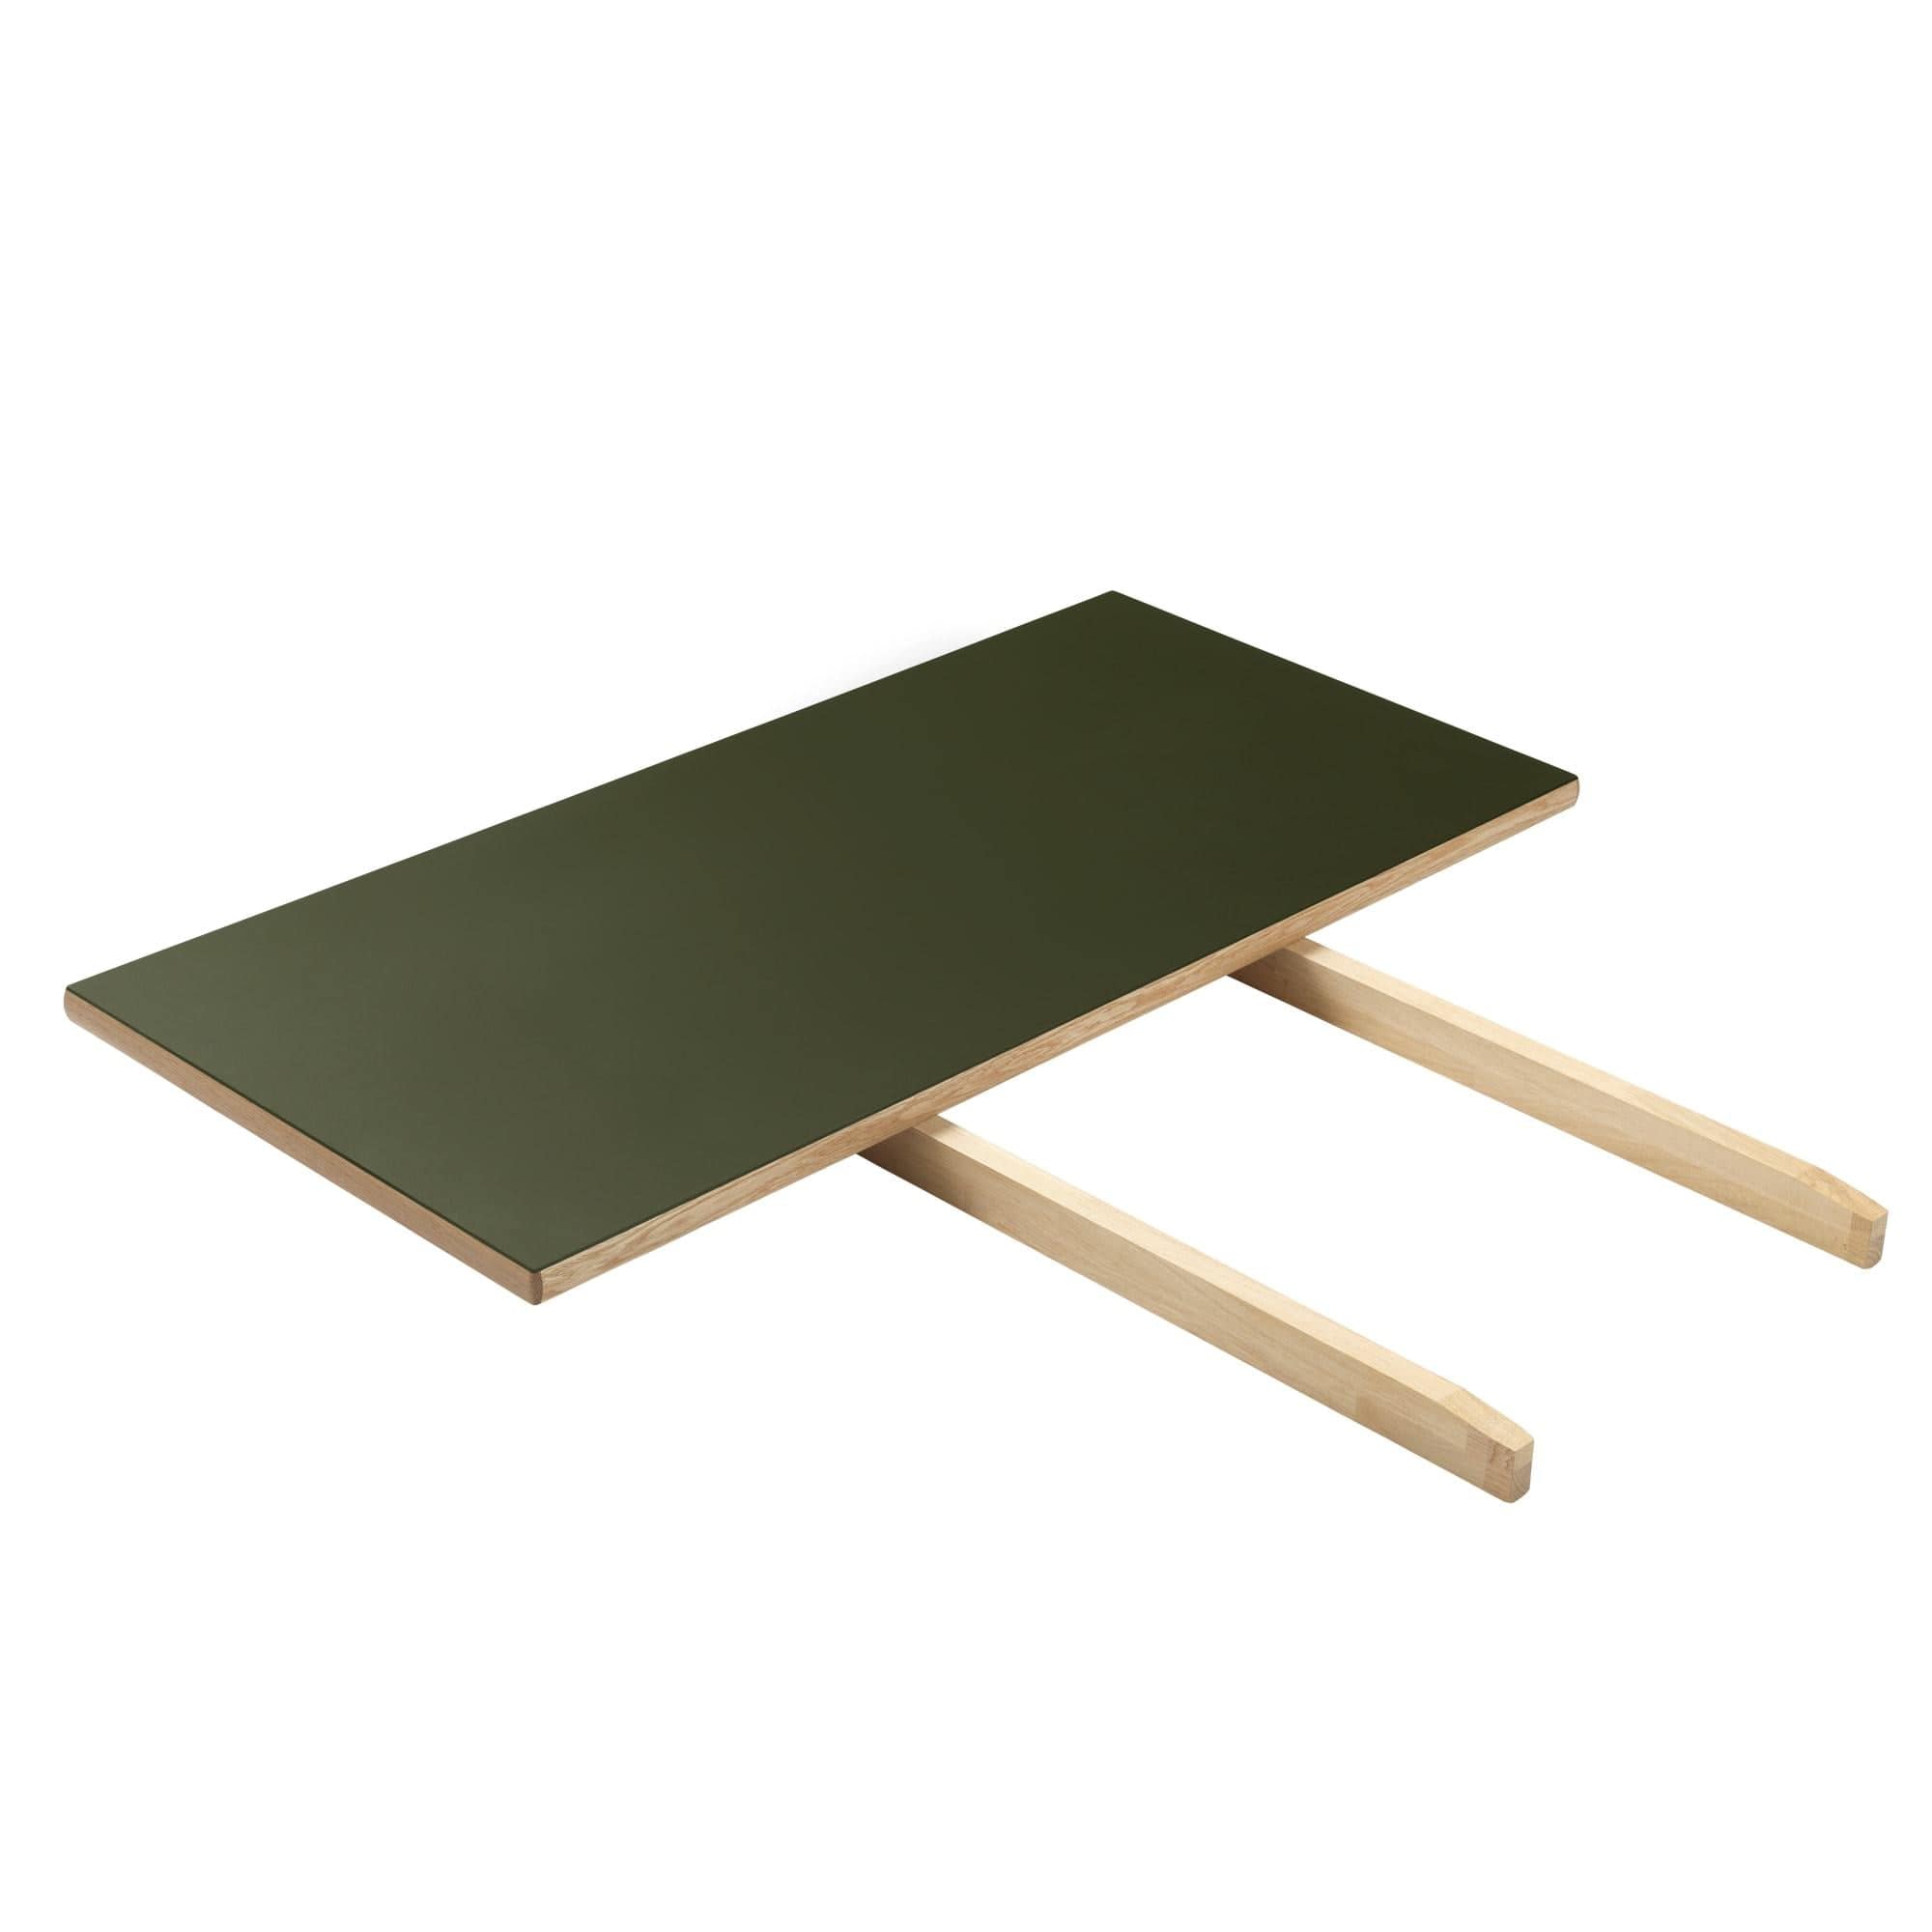 FDB Møbler C35 Extension Plate Oak/Olive Linoleum, 45 cm